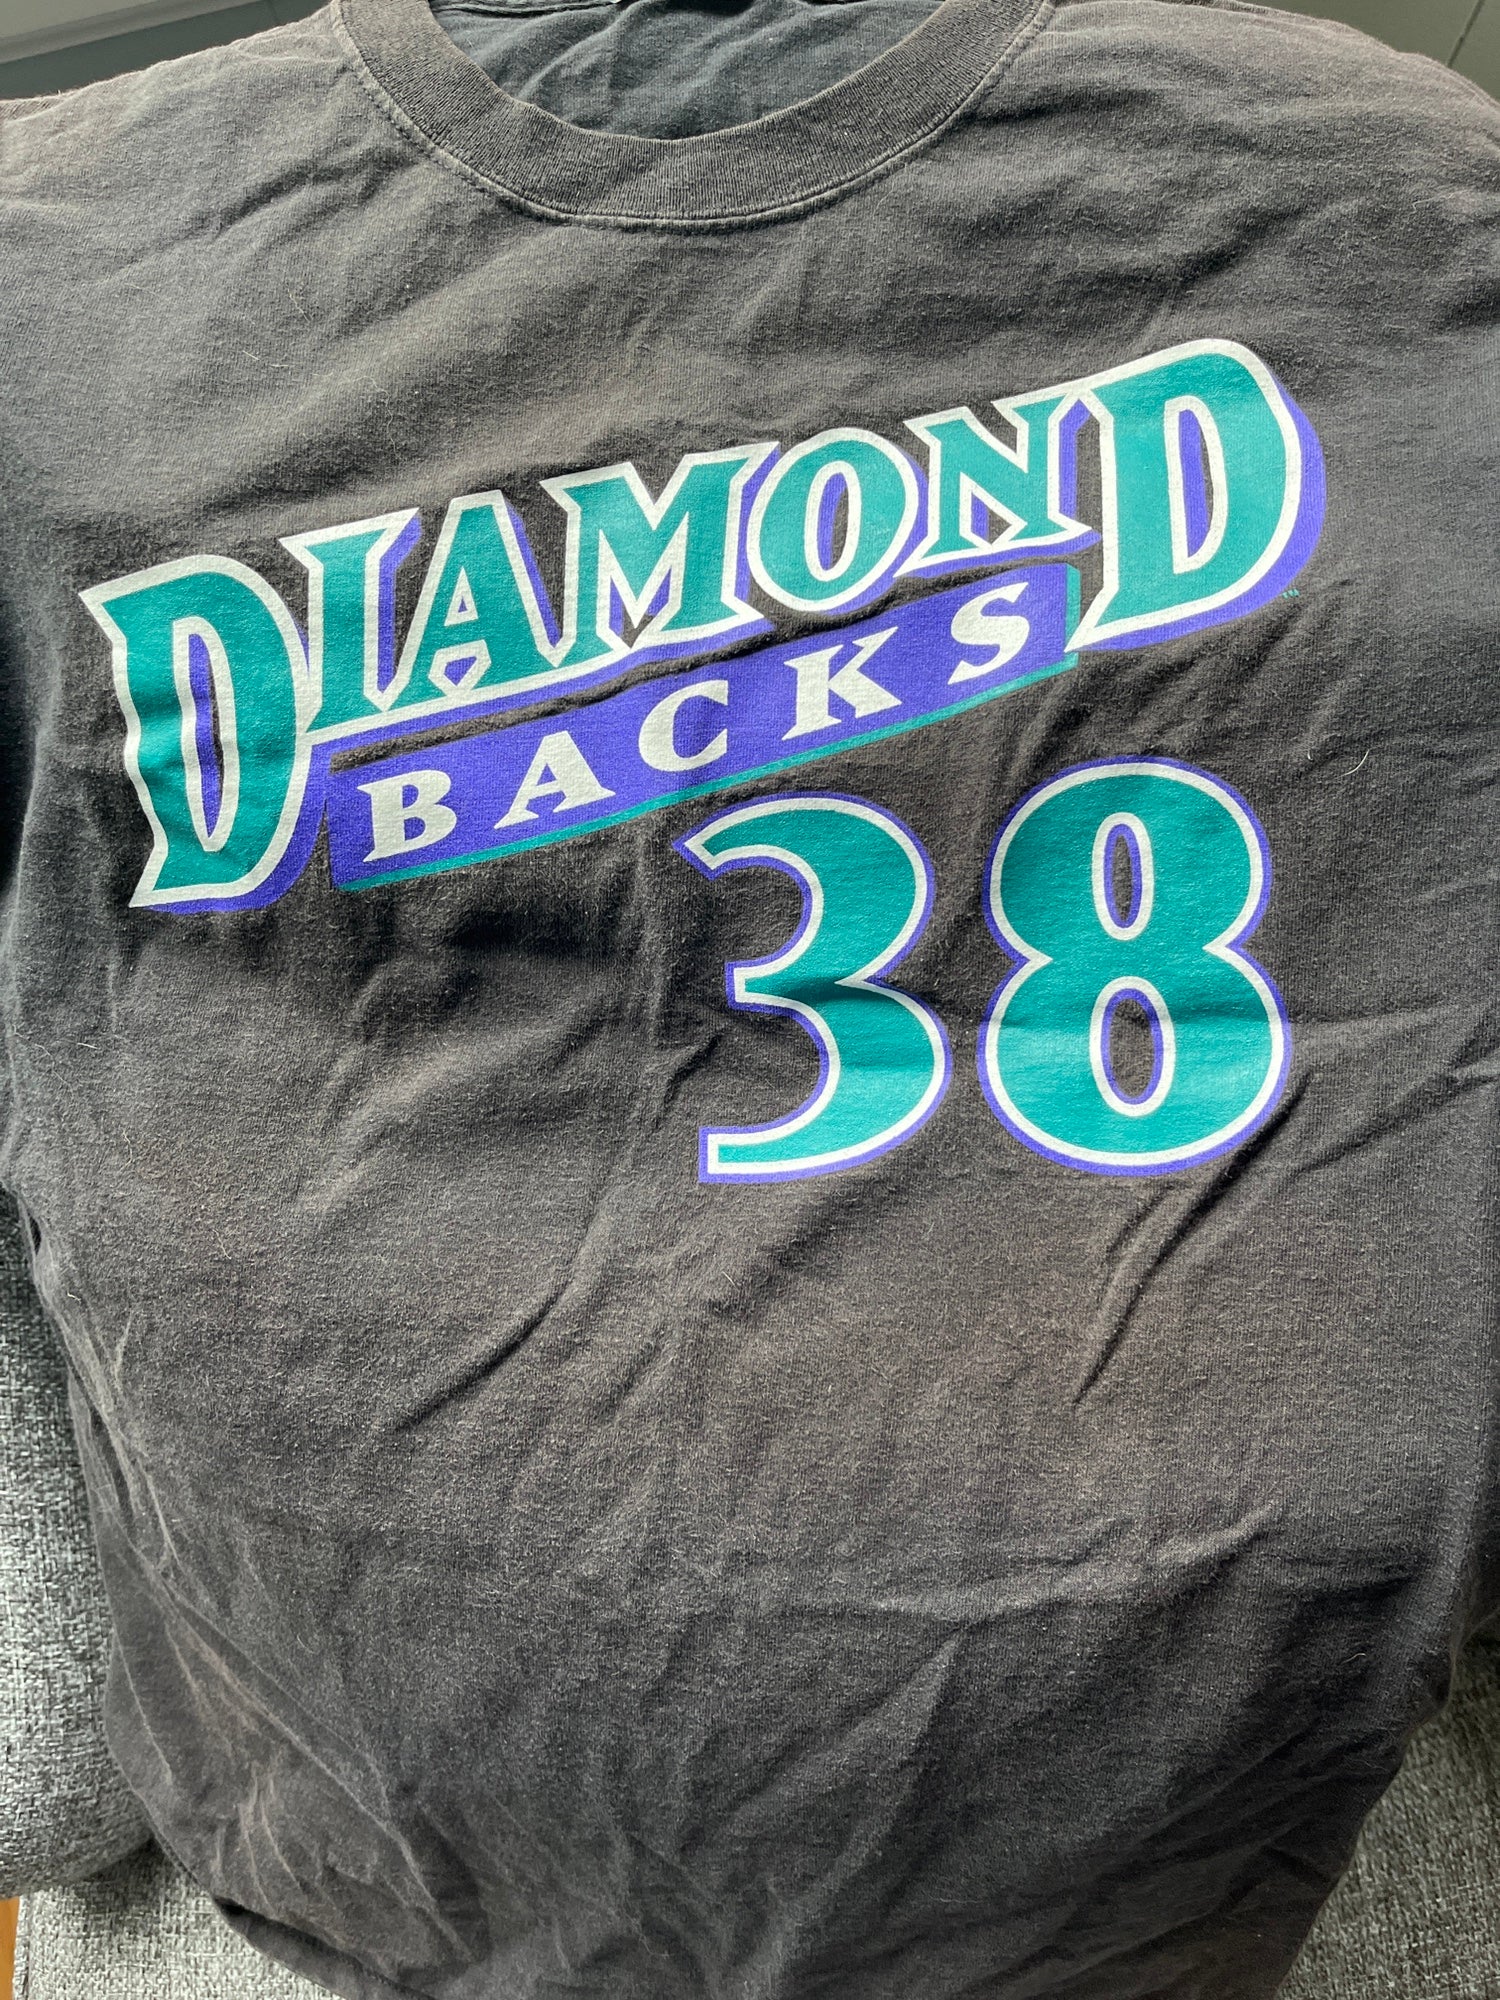 Majestic Arizona Diamondbacks Schilling Shirt Dbacks